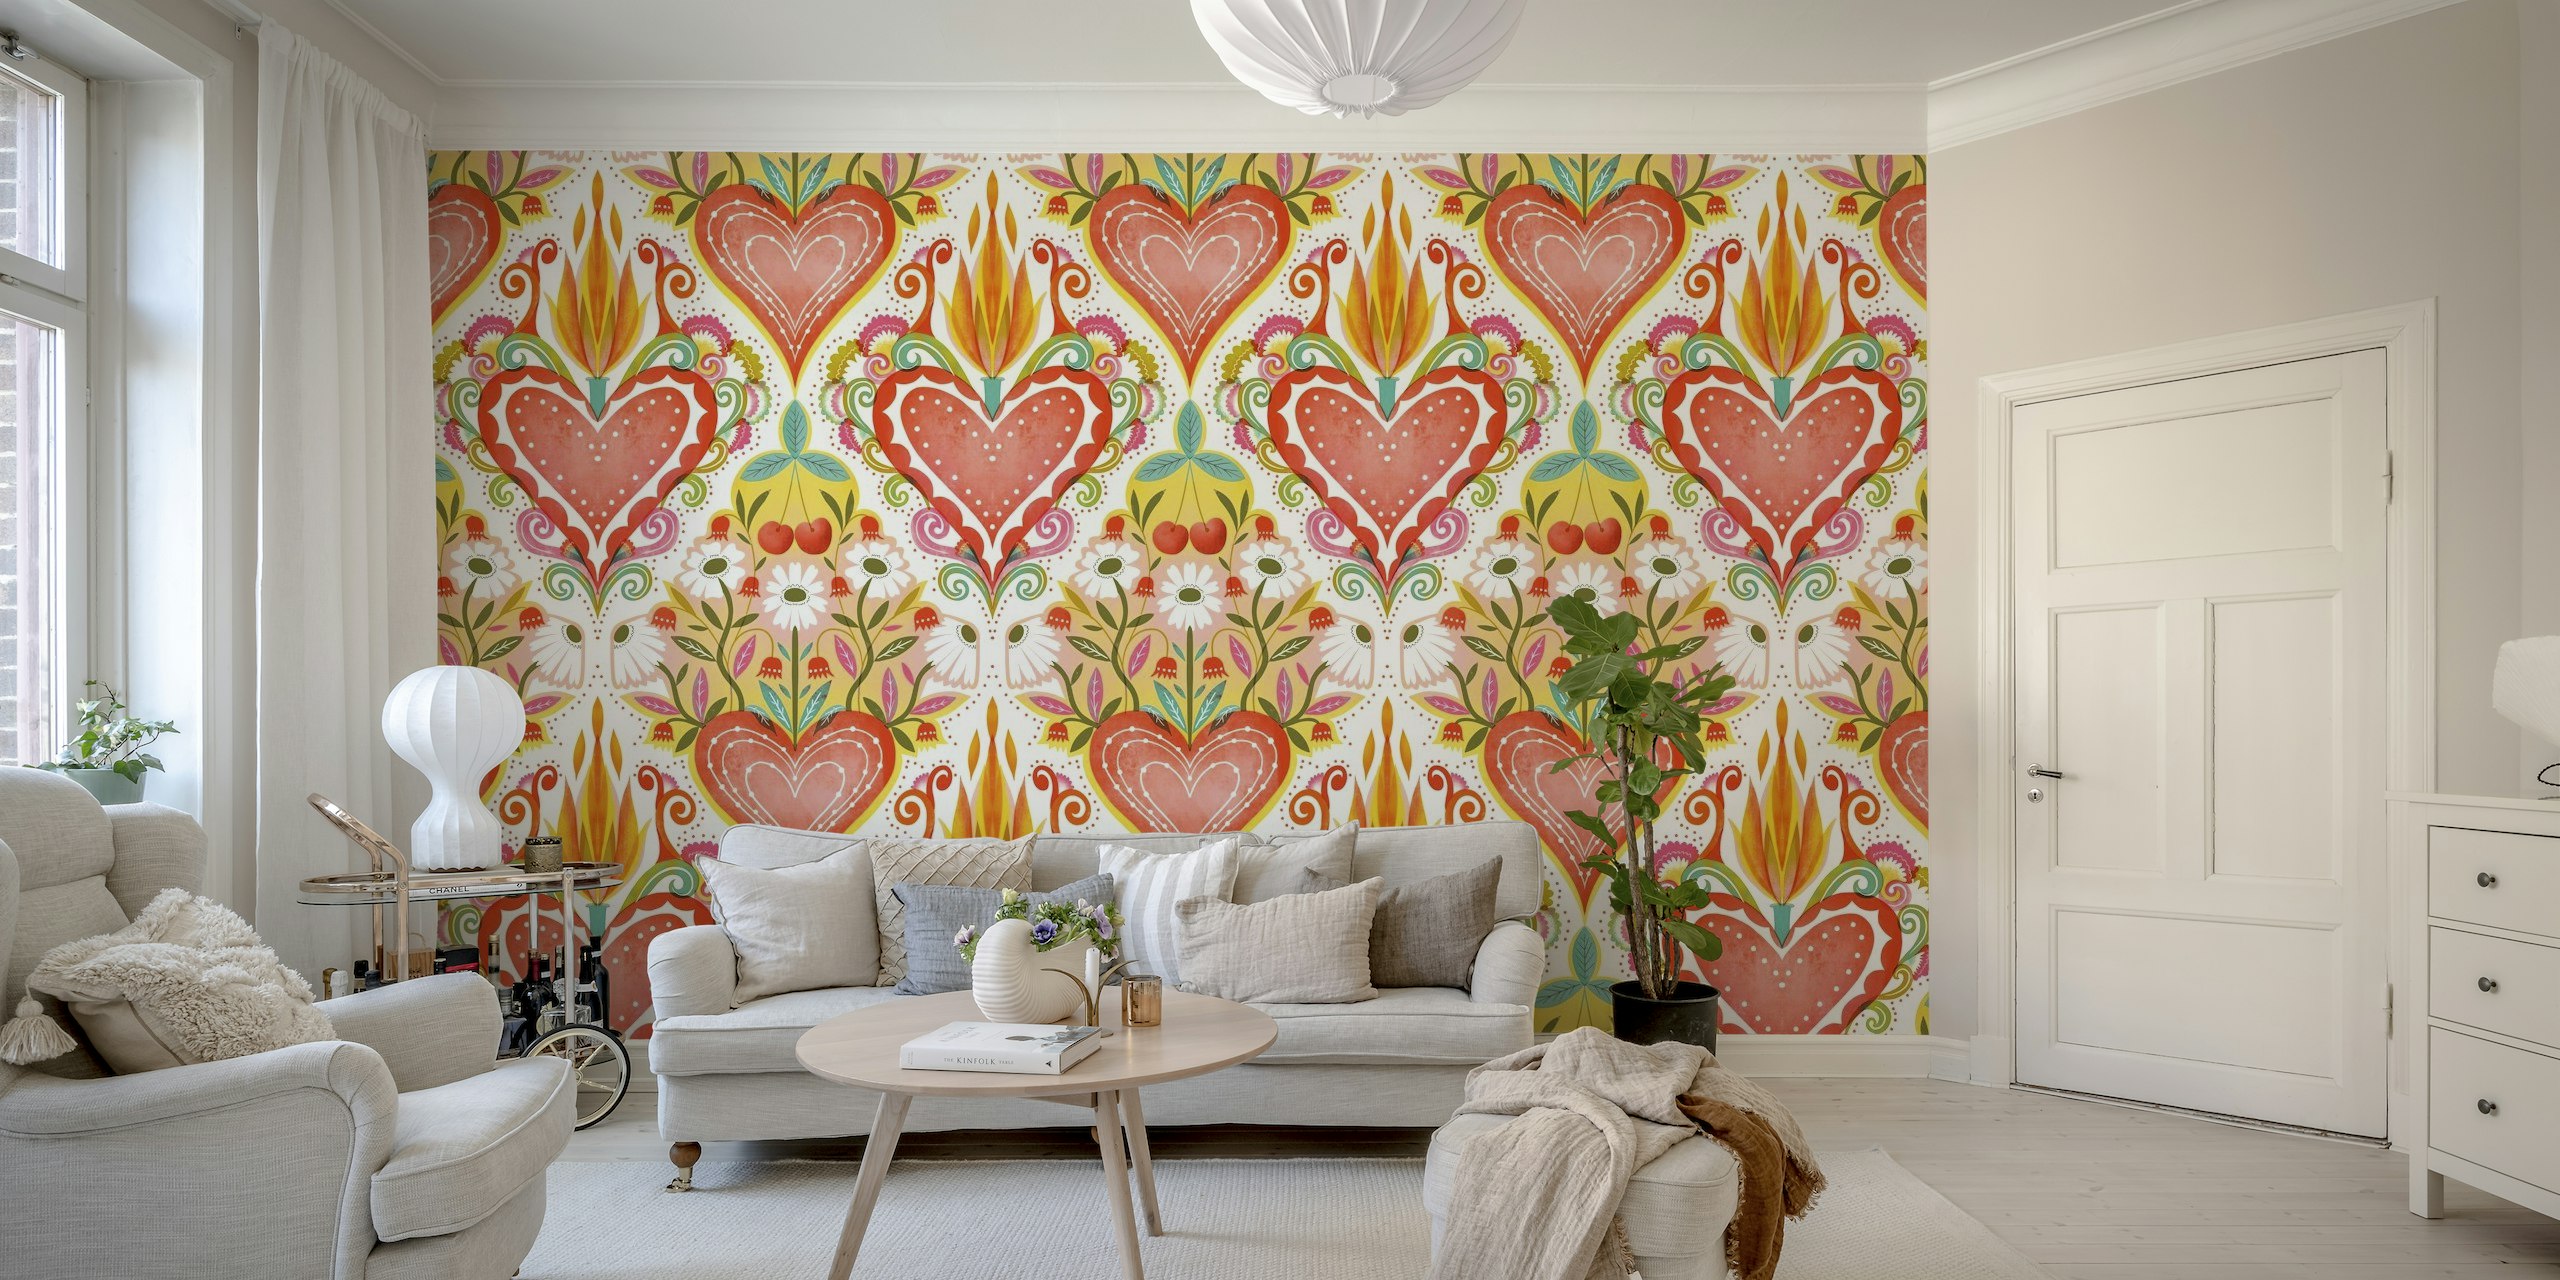 Colorido mural de pared de inspiración popular que presenta un gran corazón central con llamas y corazones y motivos florales más pequeños a su alrededor.